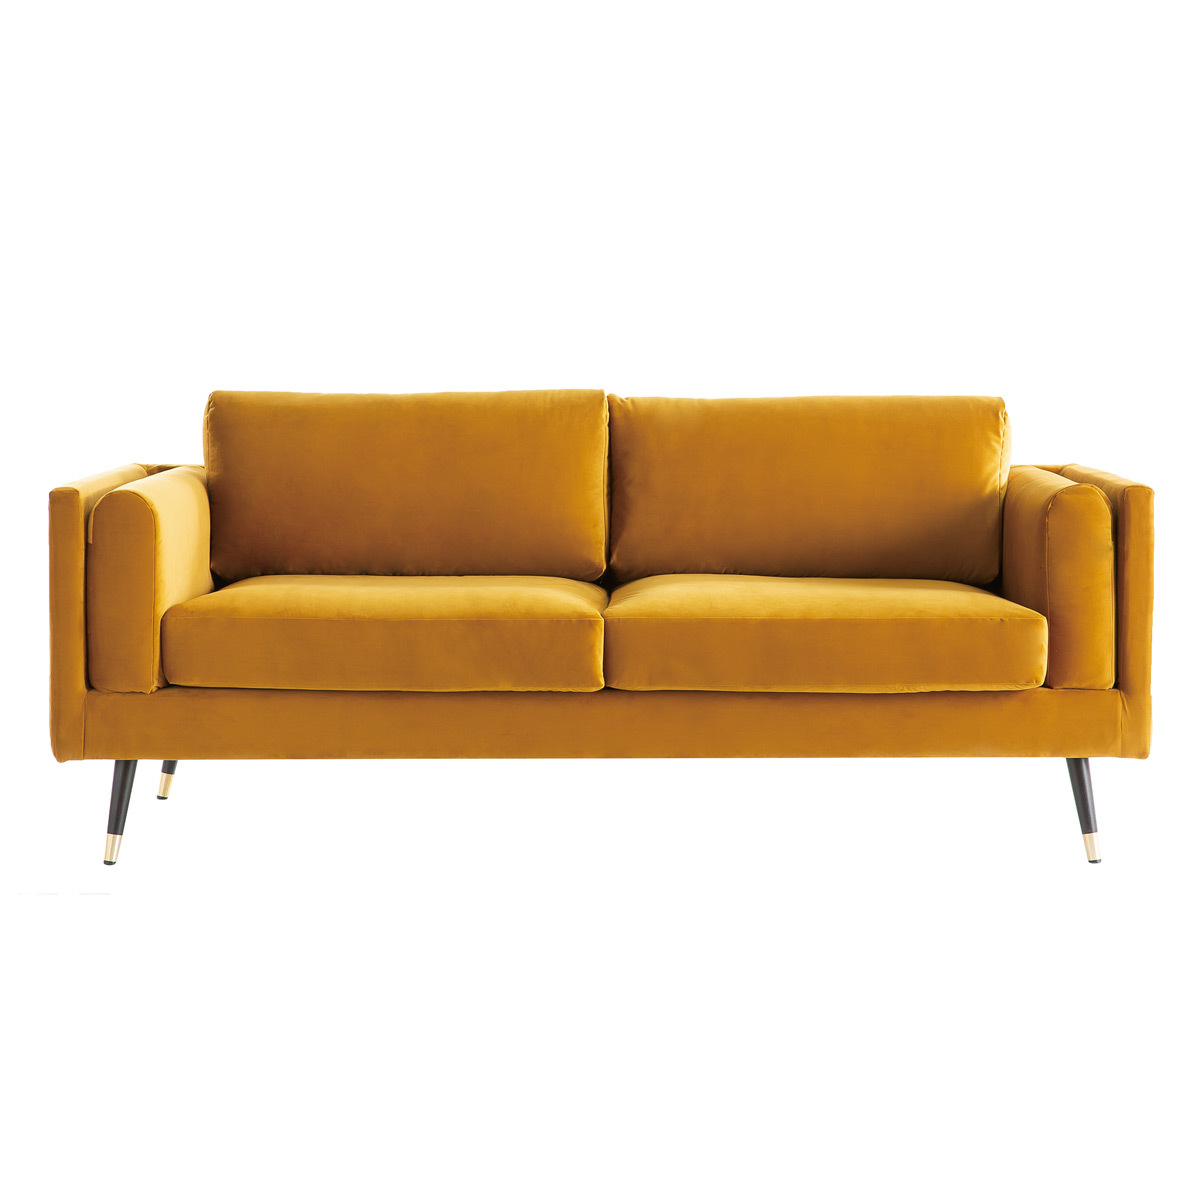 Canapé design 3 places en tissu velours jaune, bois noir et métal doré STING vue1